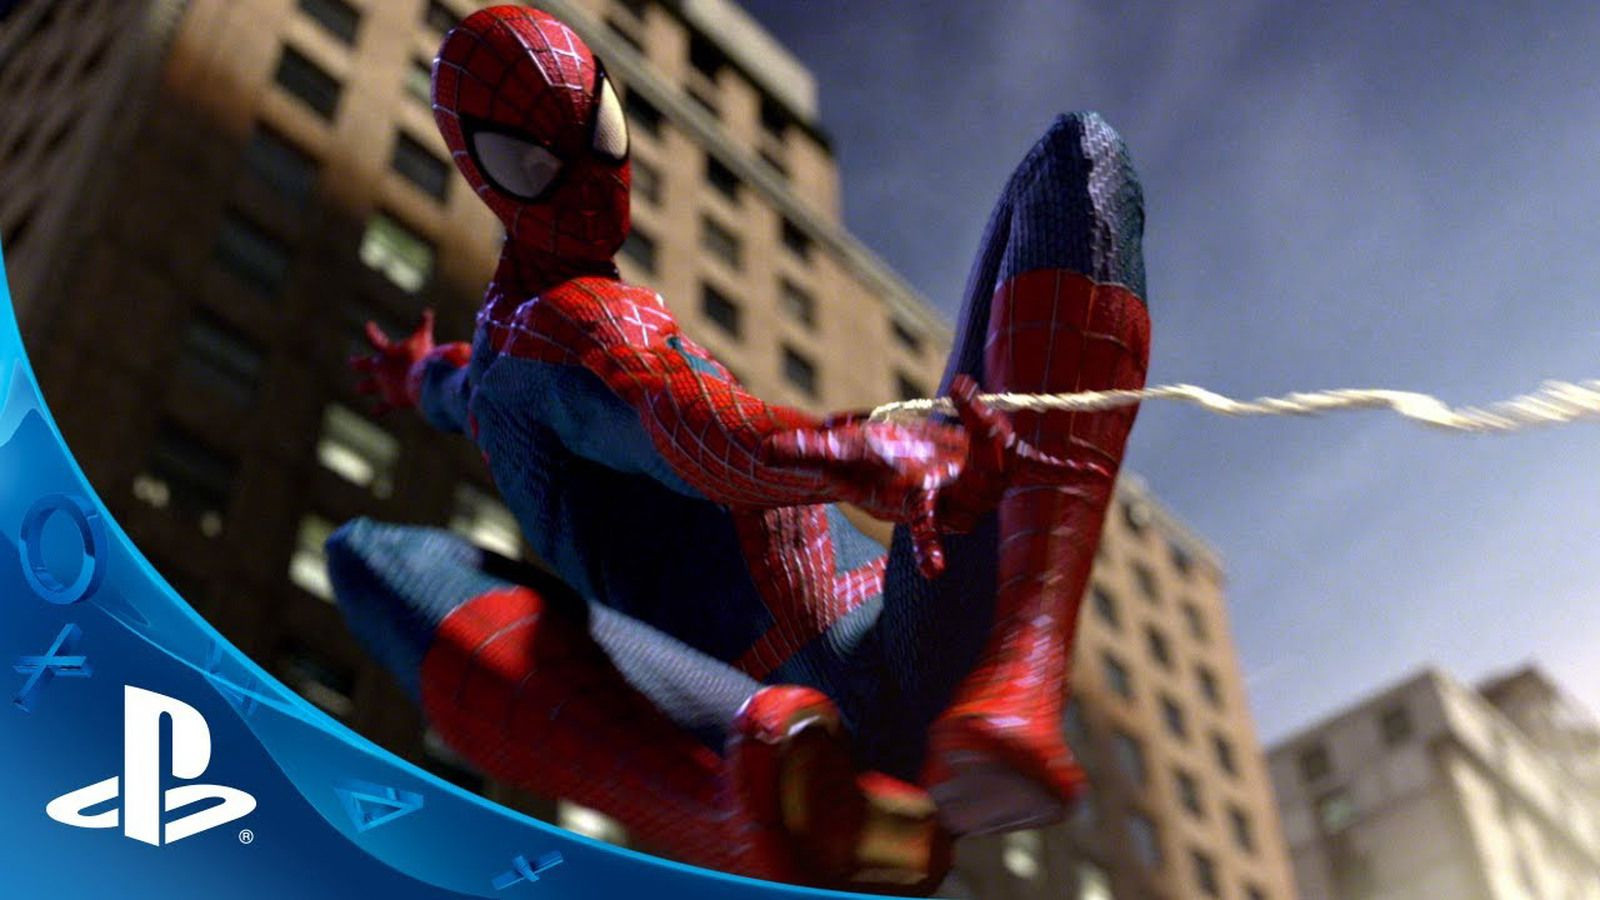 Спайдер ман 2. Спайдермен 2. The amazing Spider-man 2 игра. Эмейзинг человек паук 2. The amazing Spider-man (игра, 2012).